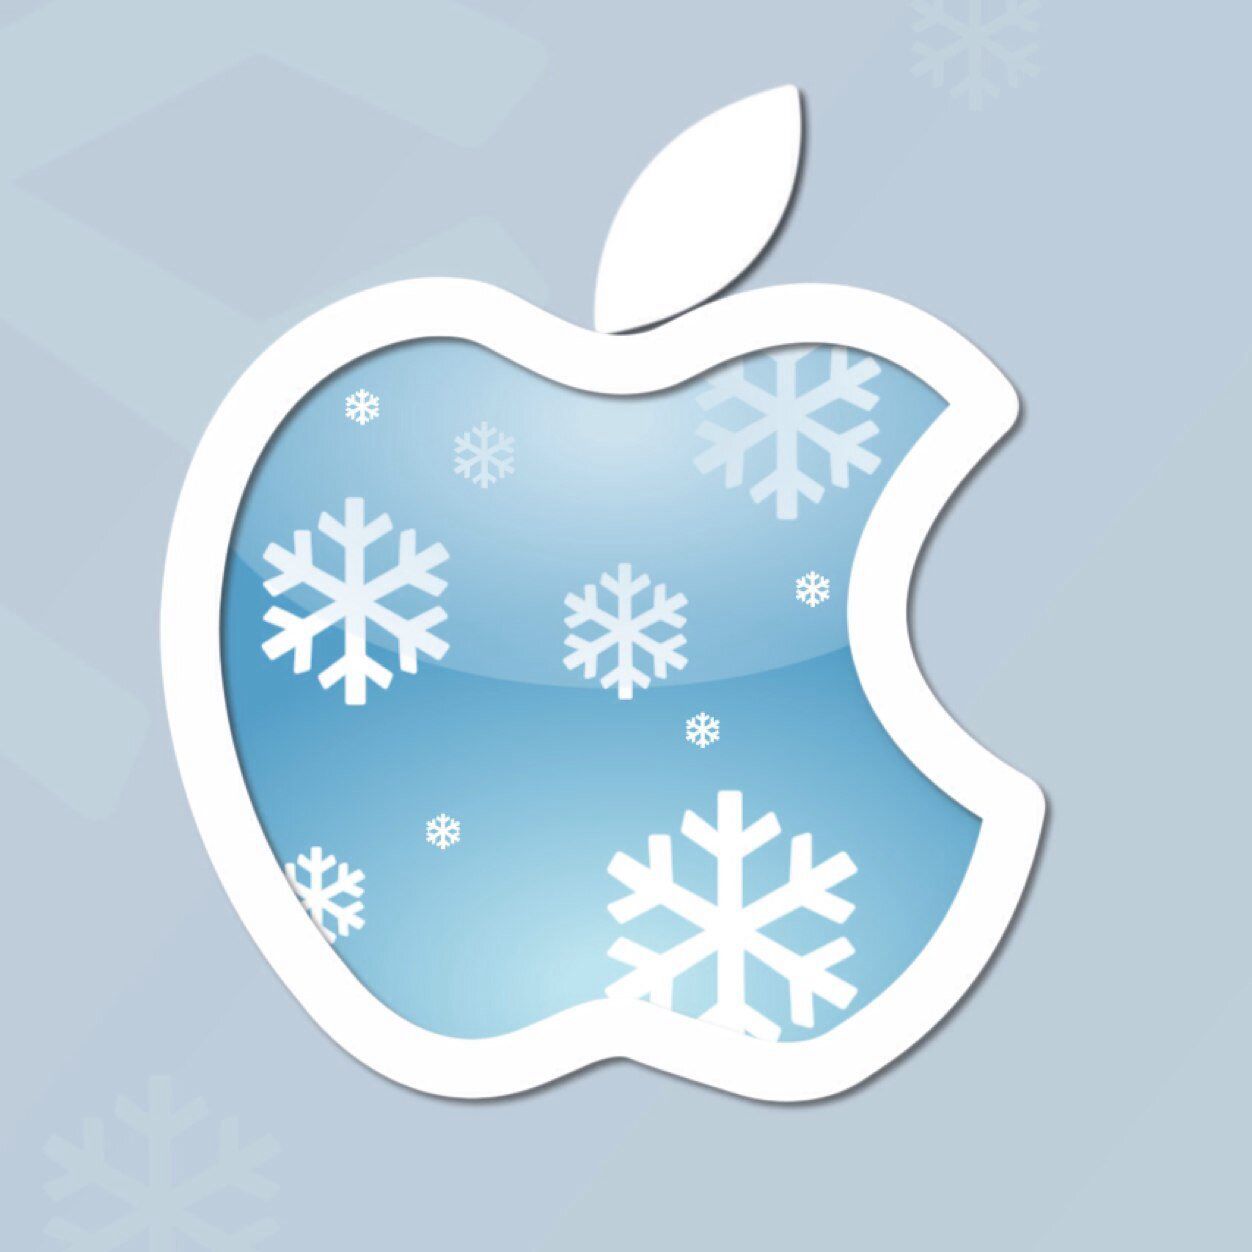 Apple Winter Wallpapers - 4k, HD Apple Winter Backgrounds on WallpaperBat